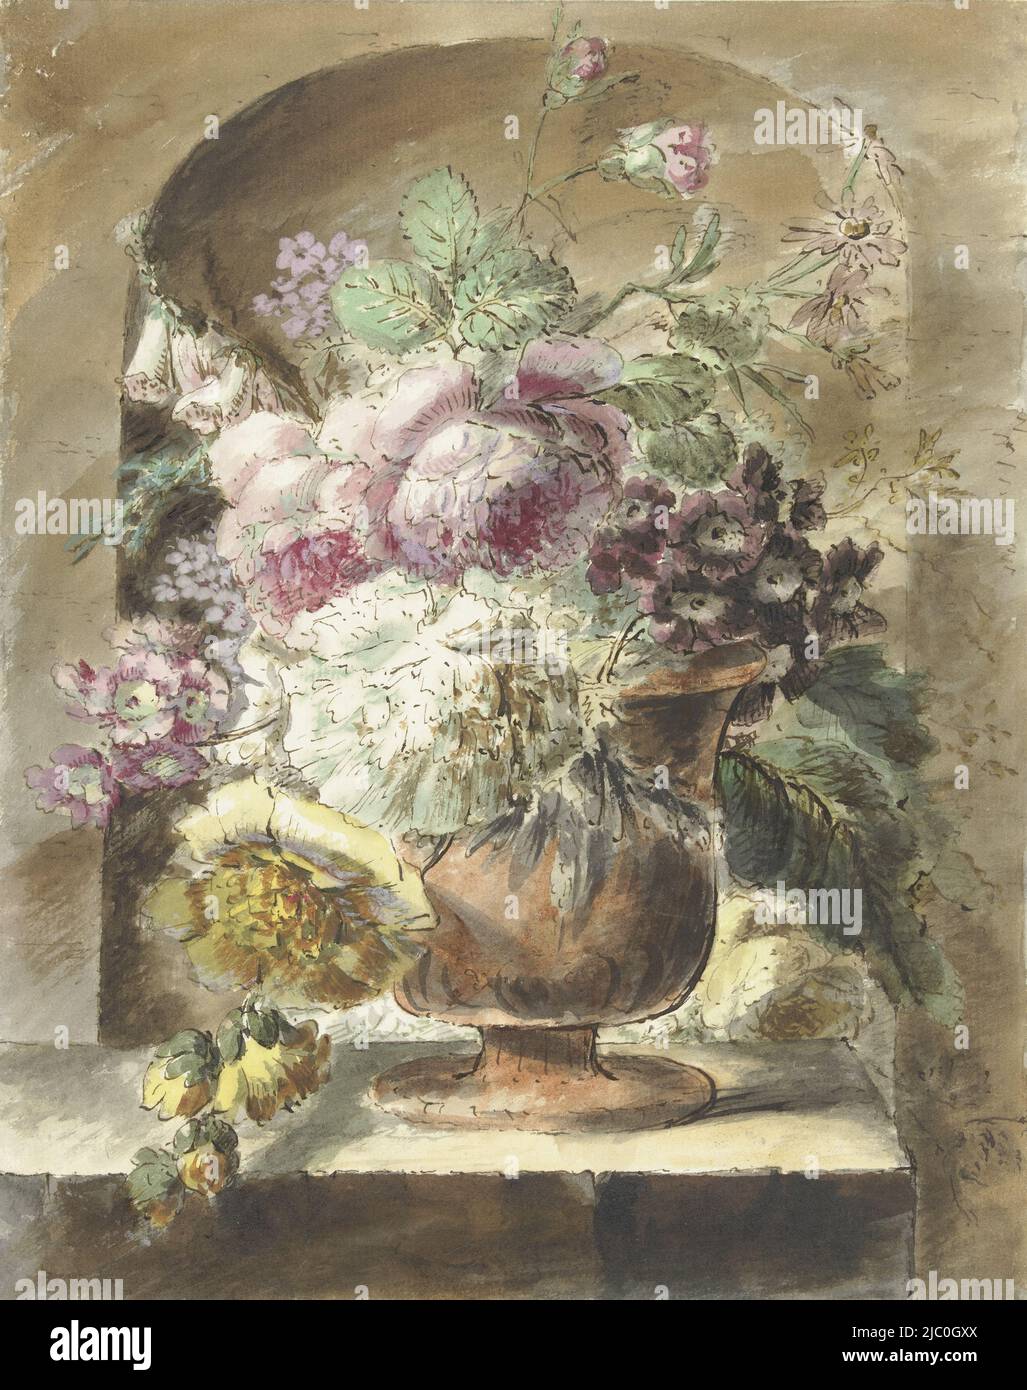 Blumen, Zeichner: Pieter van Loo, 1745 - 1784, Papier, Stift, Pinsel, H 270 mm × B 215 mm Stockfoto